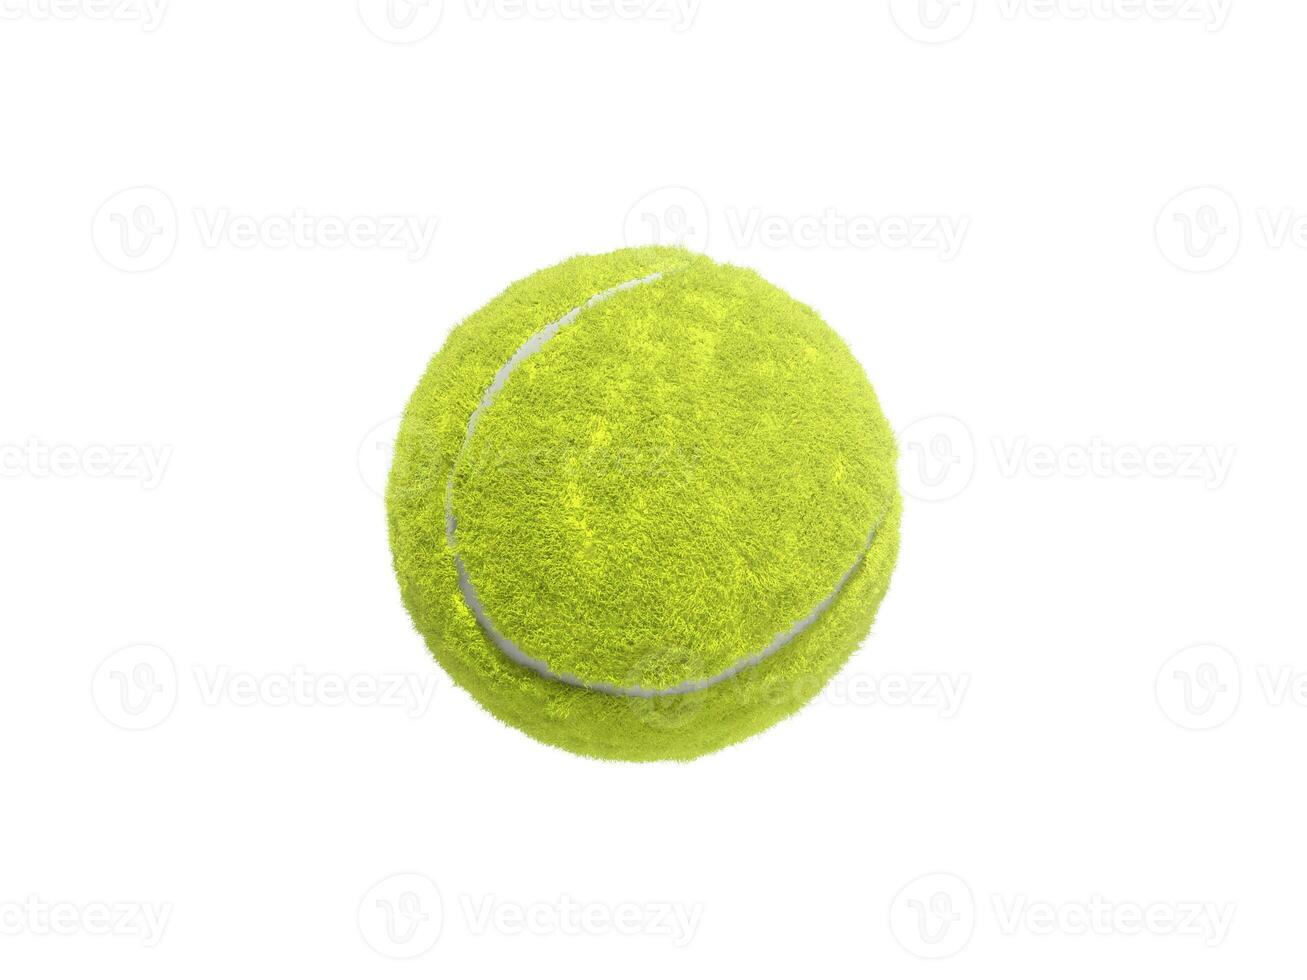 tennis palla isolato senza ombra foto